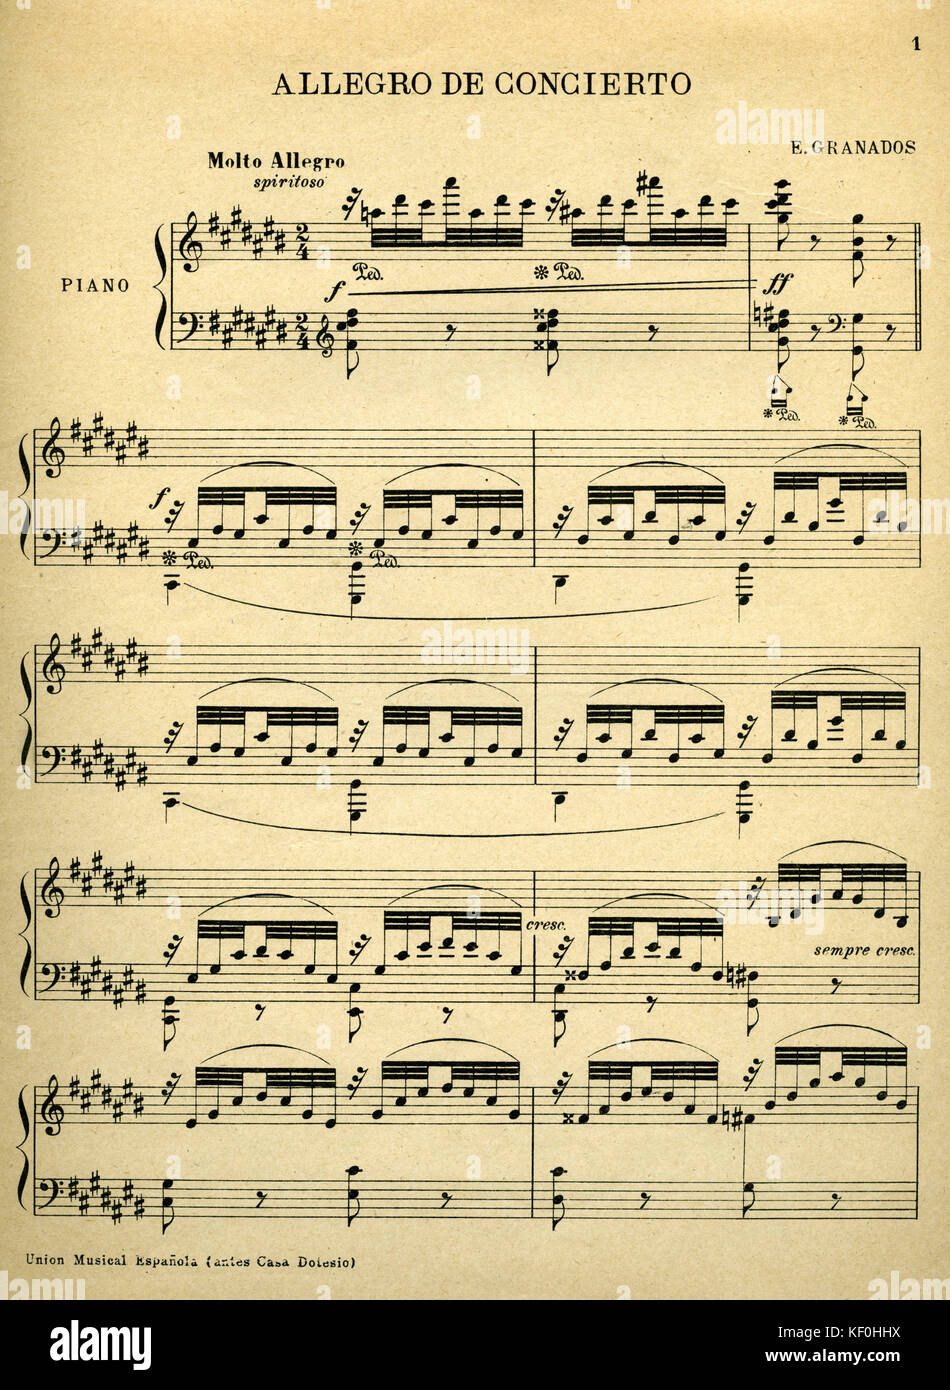 Enrique Granados Op. 39 'Capricho Espanol para Piano', herausgegeben von Union musikalische Espanola. Die erste Seite der Partitur, "Allegro de Concierto'. EG, der spanische Komponist, 27. Juli 1867 - 24. März 1916. Stockfoto